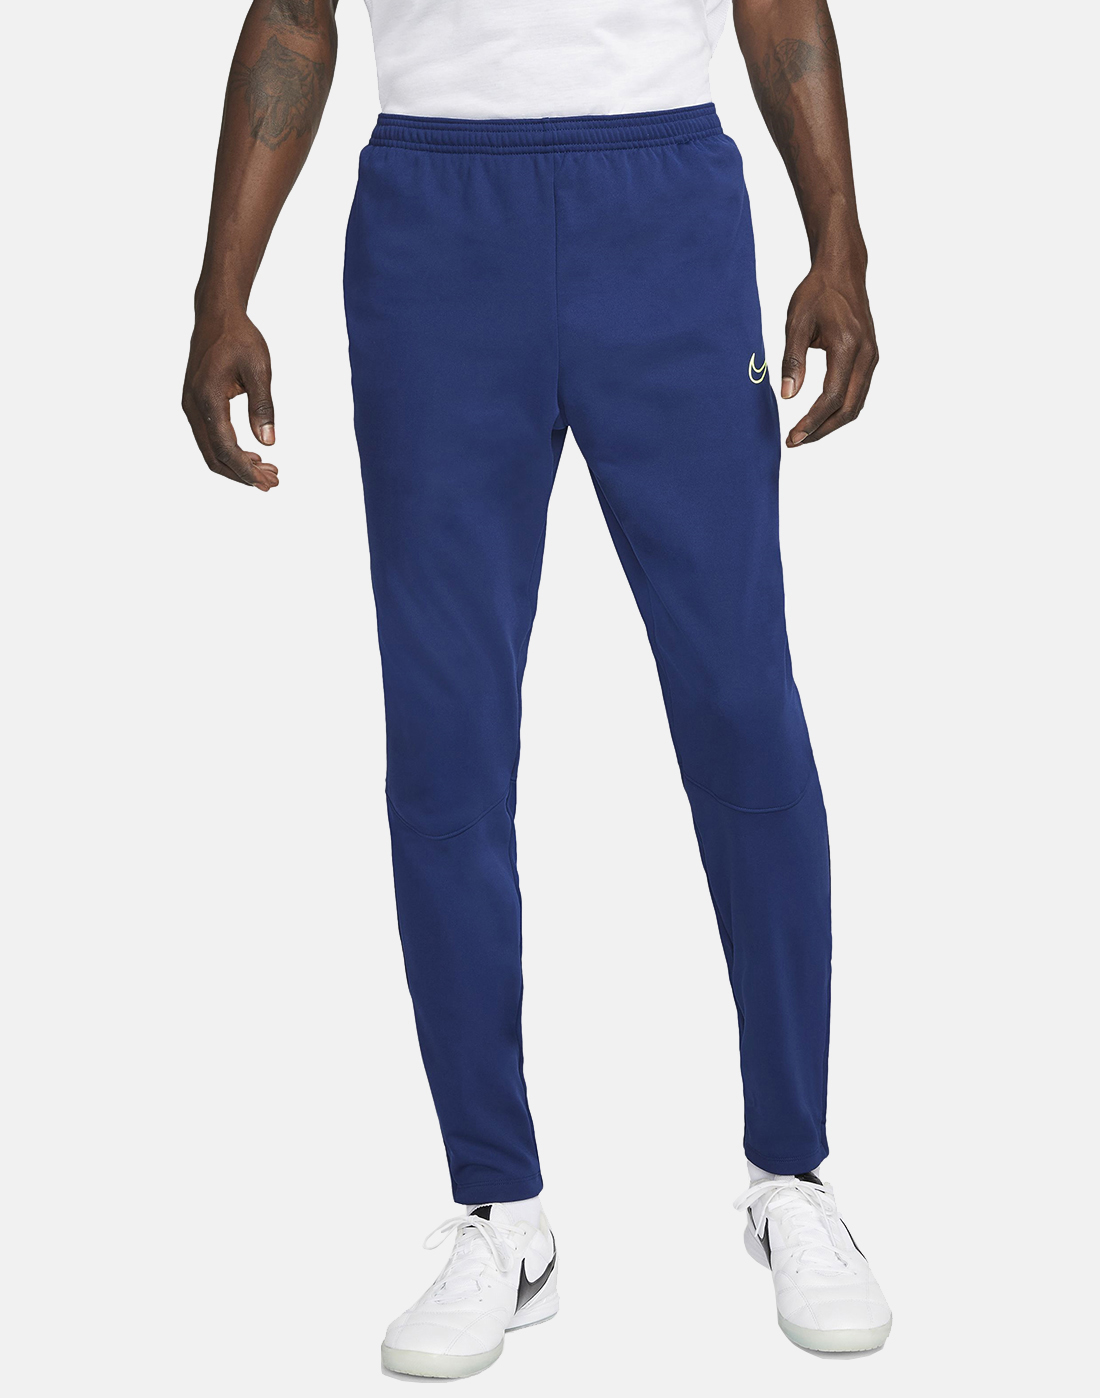 Nike Mens Academy Pants - Blue | Life Style Sports EU